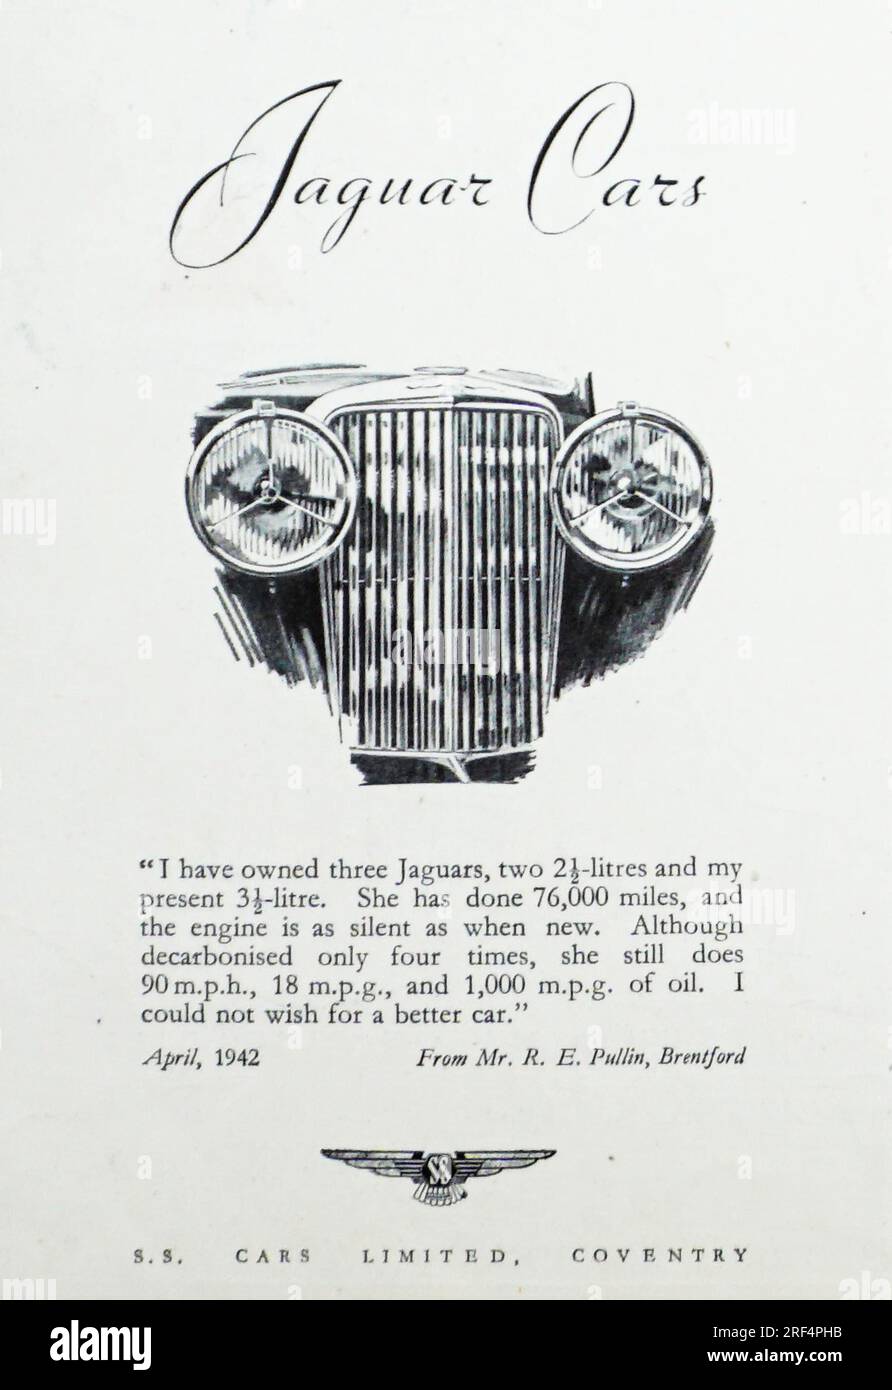 Un anuncio de 1942 para Jaguar Cars. El anuncio fue insertado por S.S. Cars, Coventry, que en 1945 cambió su nombre a Jaguar Cars. El anuncio cuenta con un testimonio de un Sr. Pullin, Brentford, que conduce un Jaguar Car de 3 1/2 litros que hace 90mph, 18mpg, y que “no podía desear, un coche mejor” Foto de stock